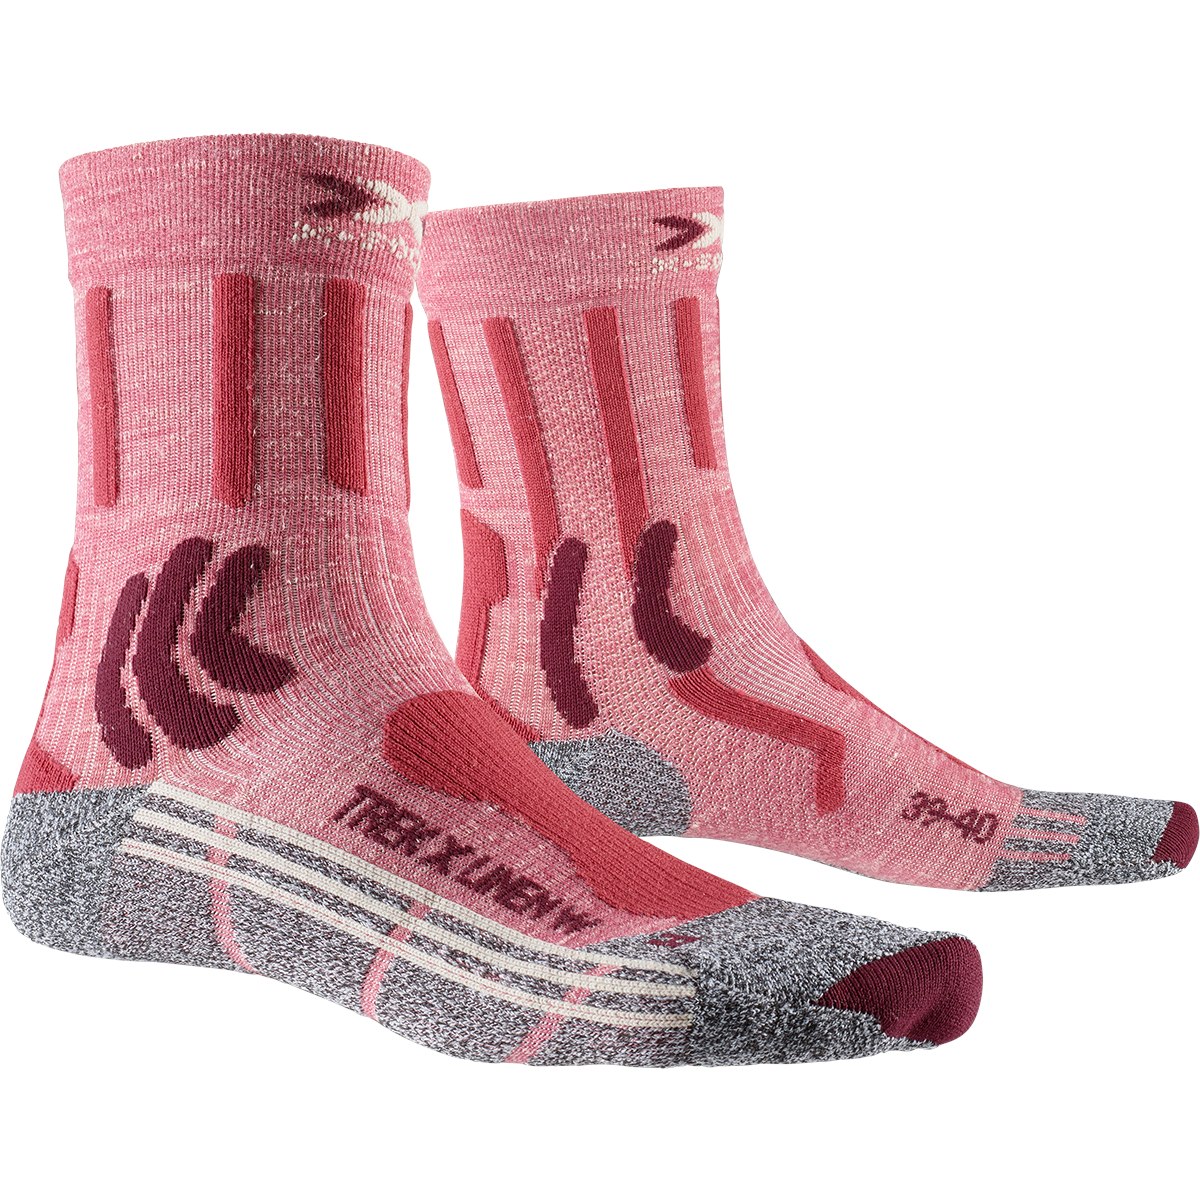 Produktbild von X-Socks Trek X Linen Damen Socken - vintage red melange/grey melange